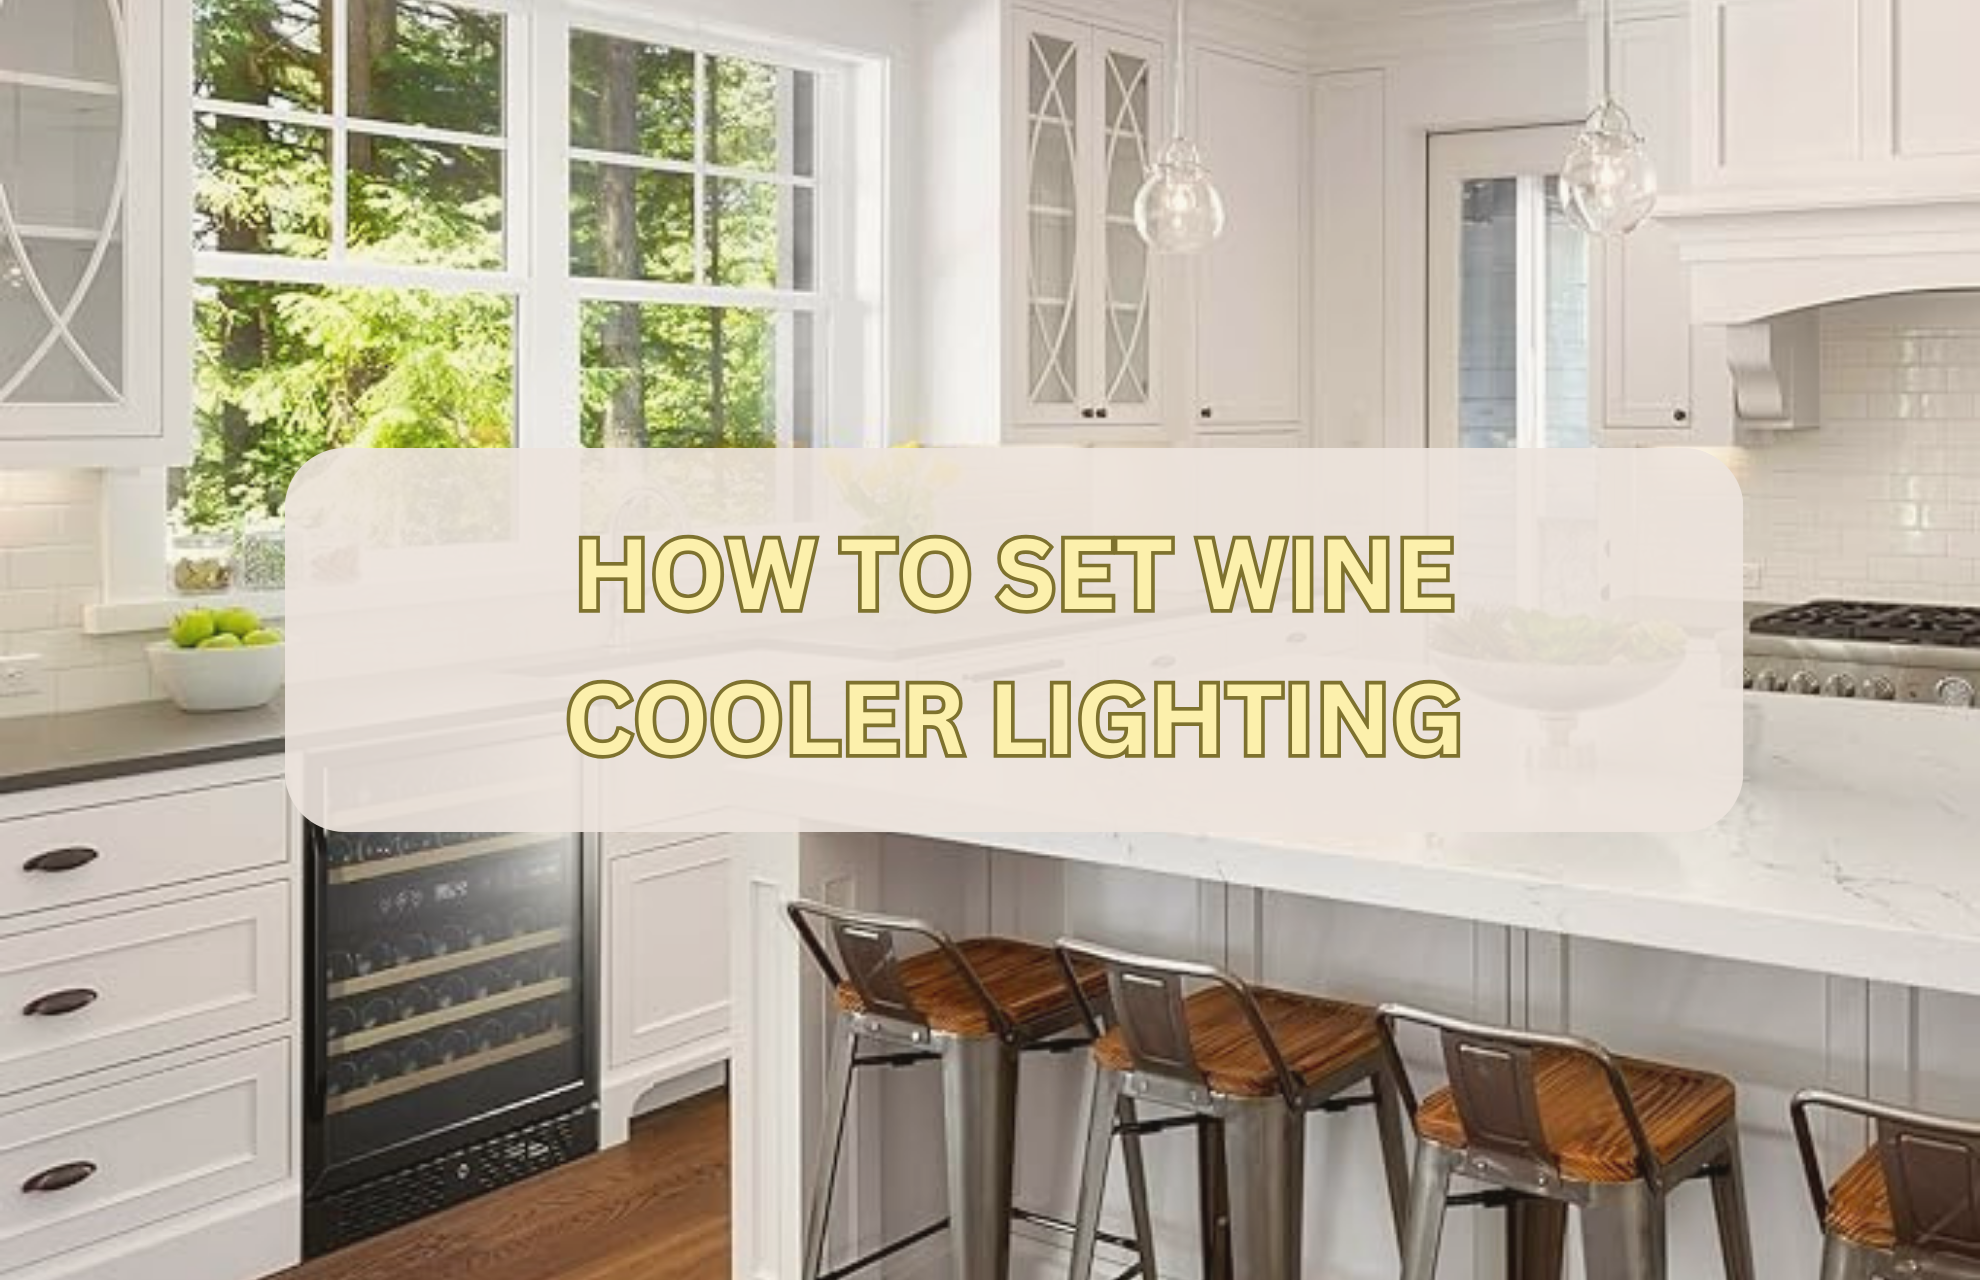 HOW TO SET WINE COOLER LIGHTING